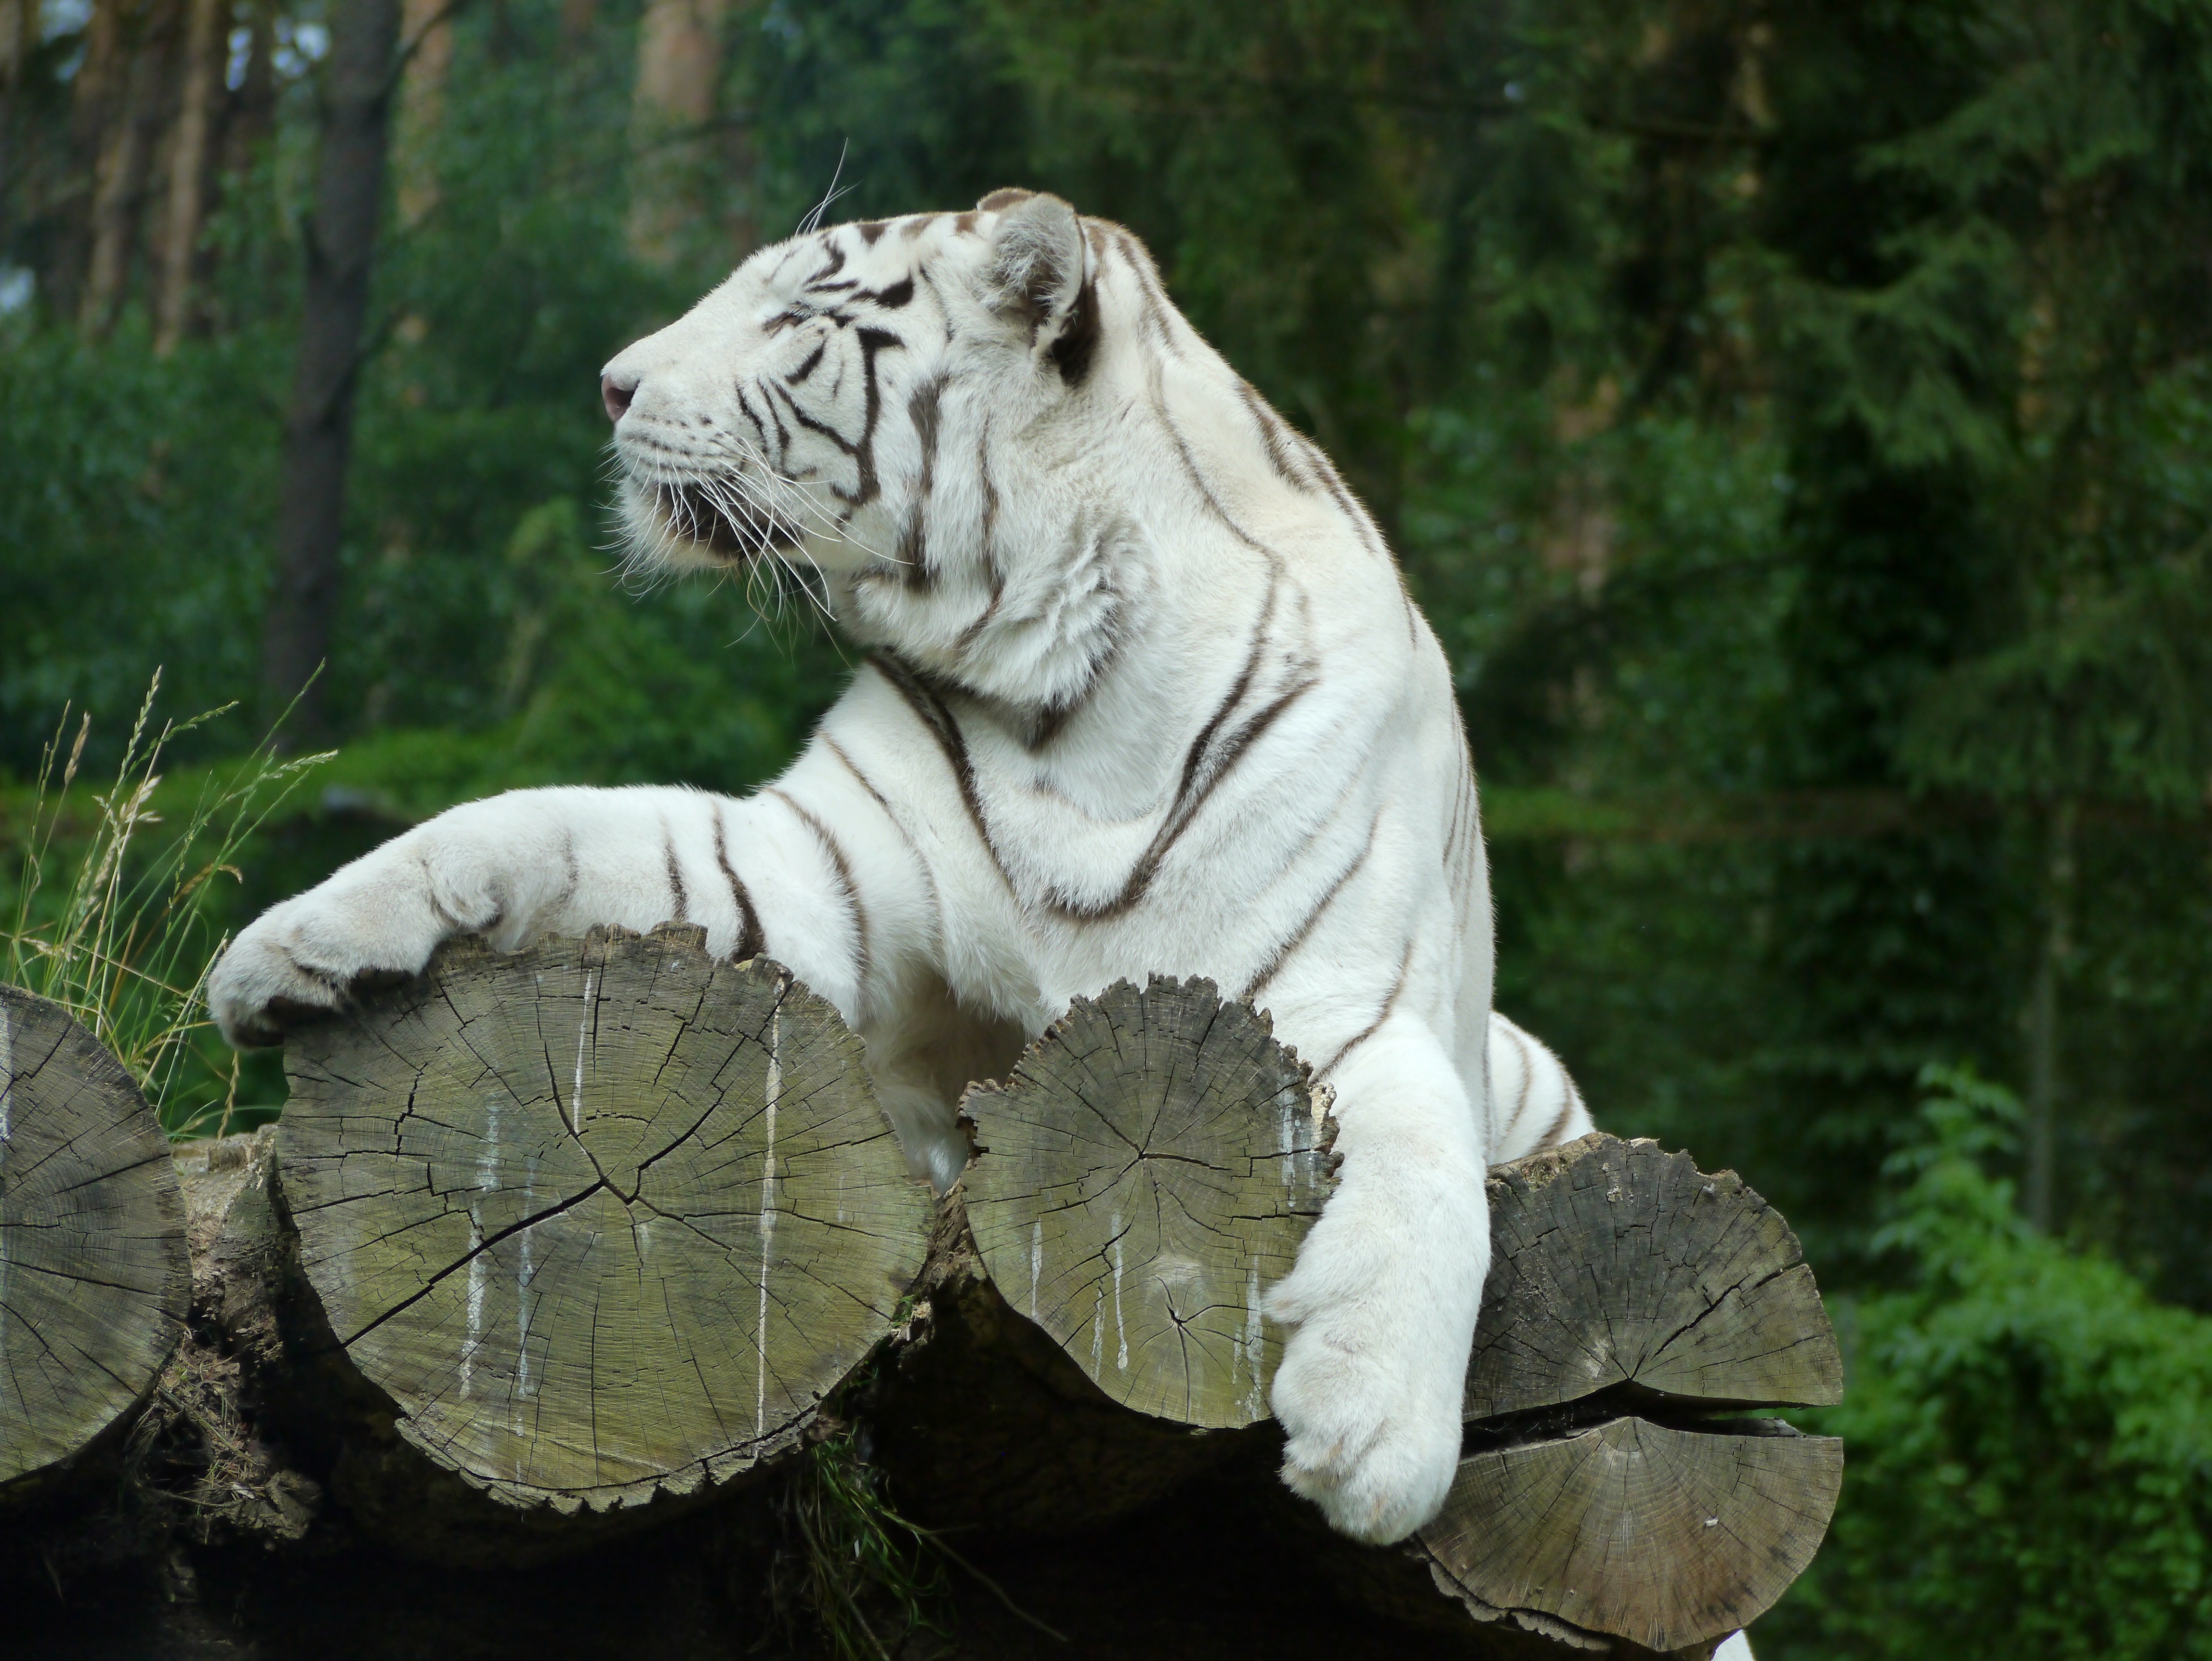 Популярные заставки и фоны Бенгальский Тигр на компьютер